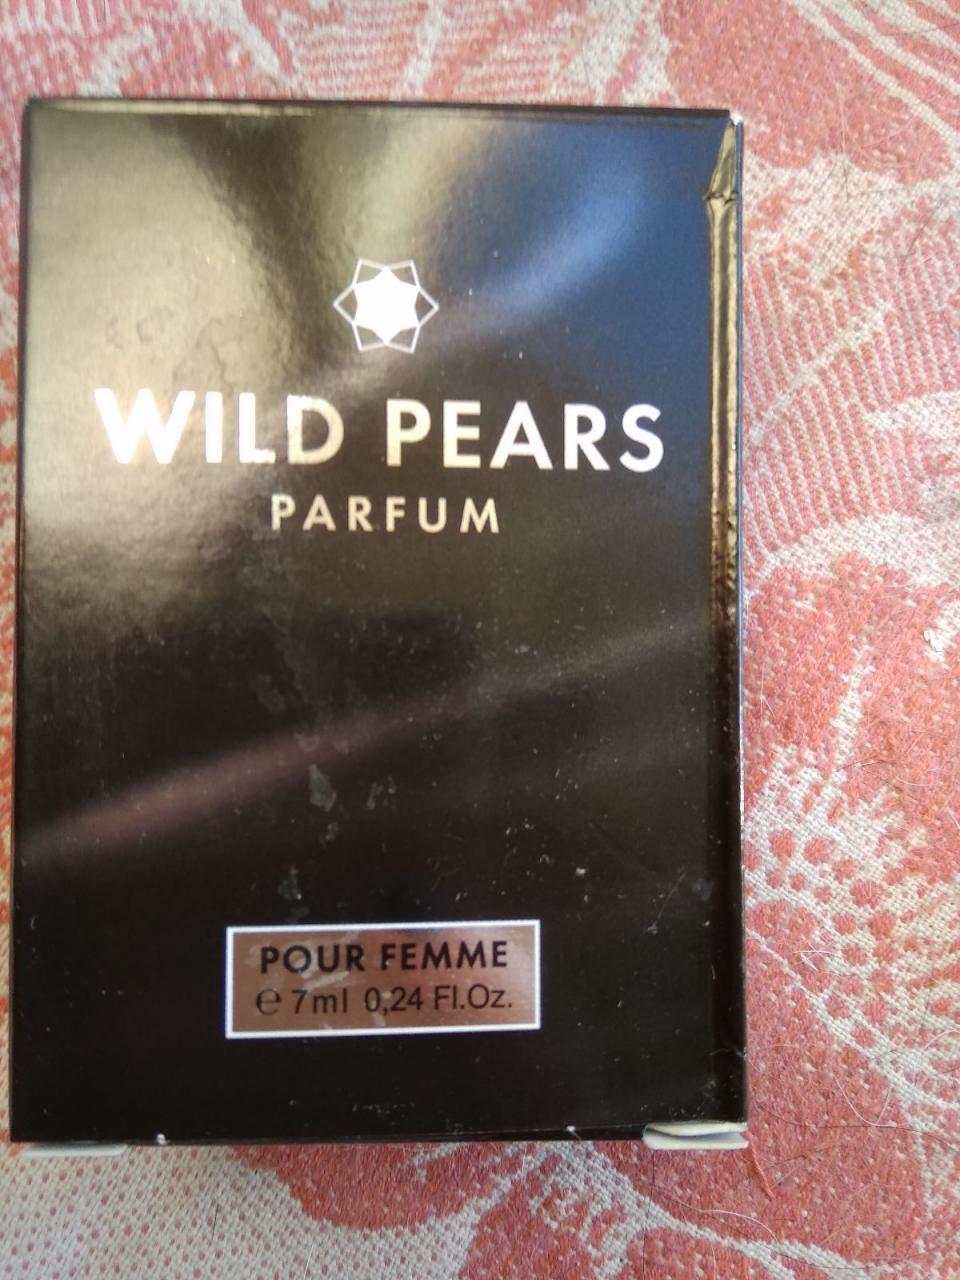 Отзыв на товар: Духи Wild Pears. Неолайн (NEO Parfum). Вид 1 от 10.10.2022 